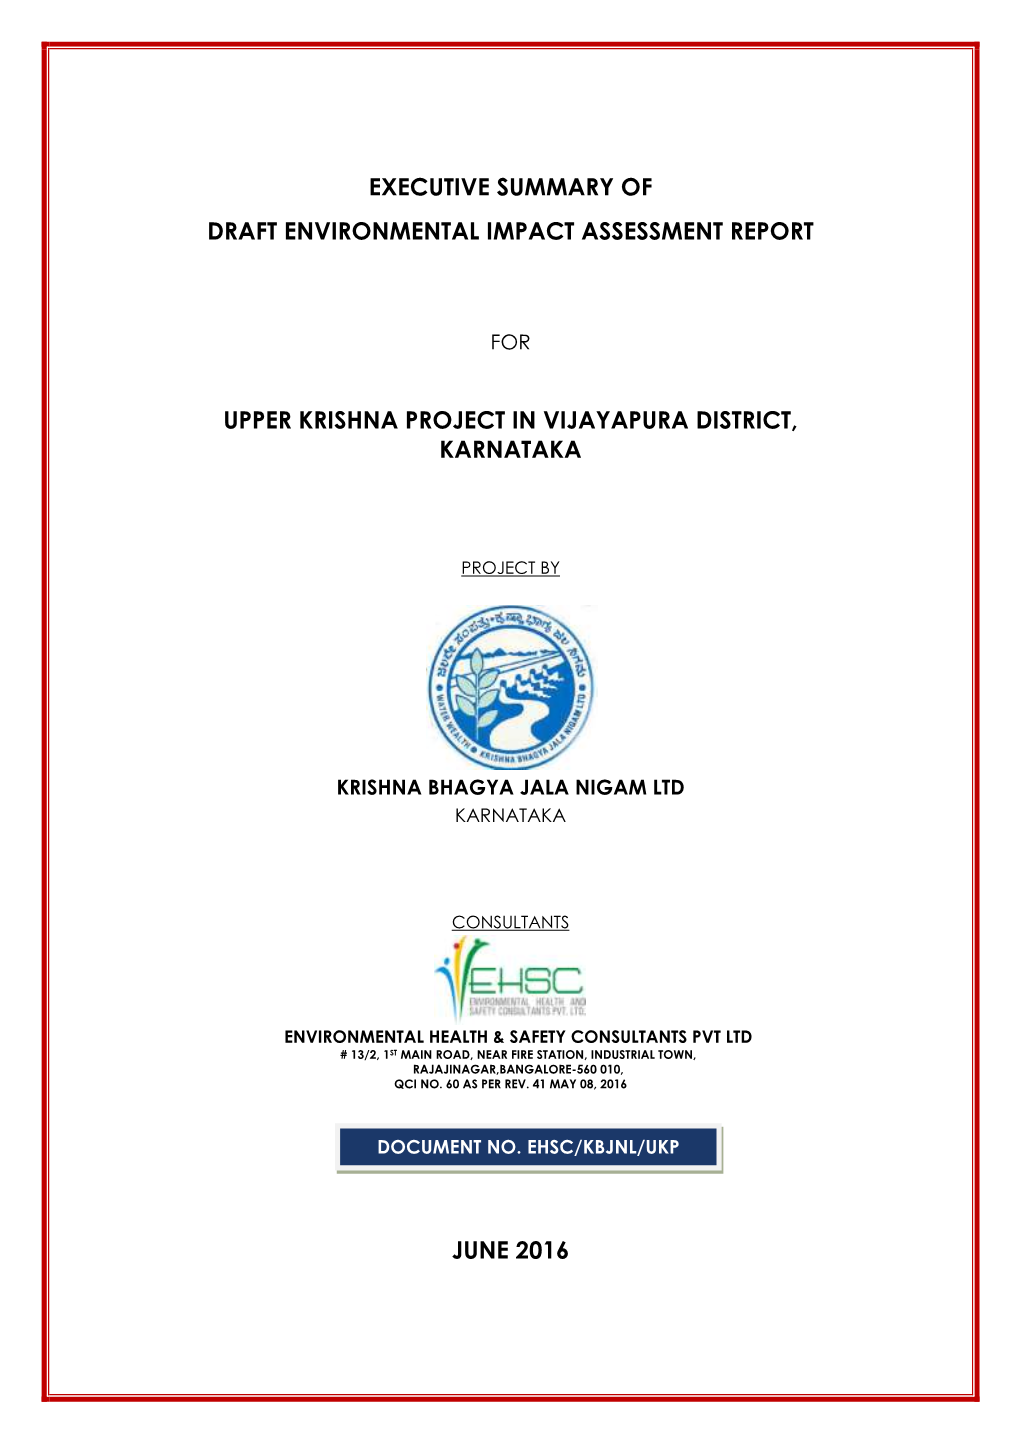 Upper Krishna Project in Vijayapura District, Karnataka